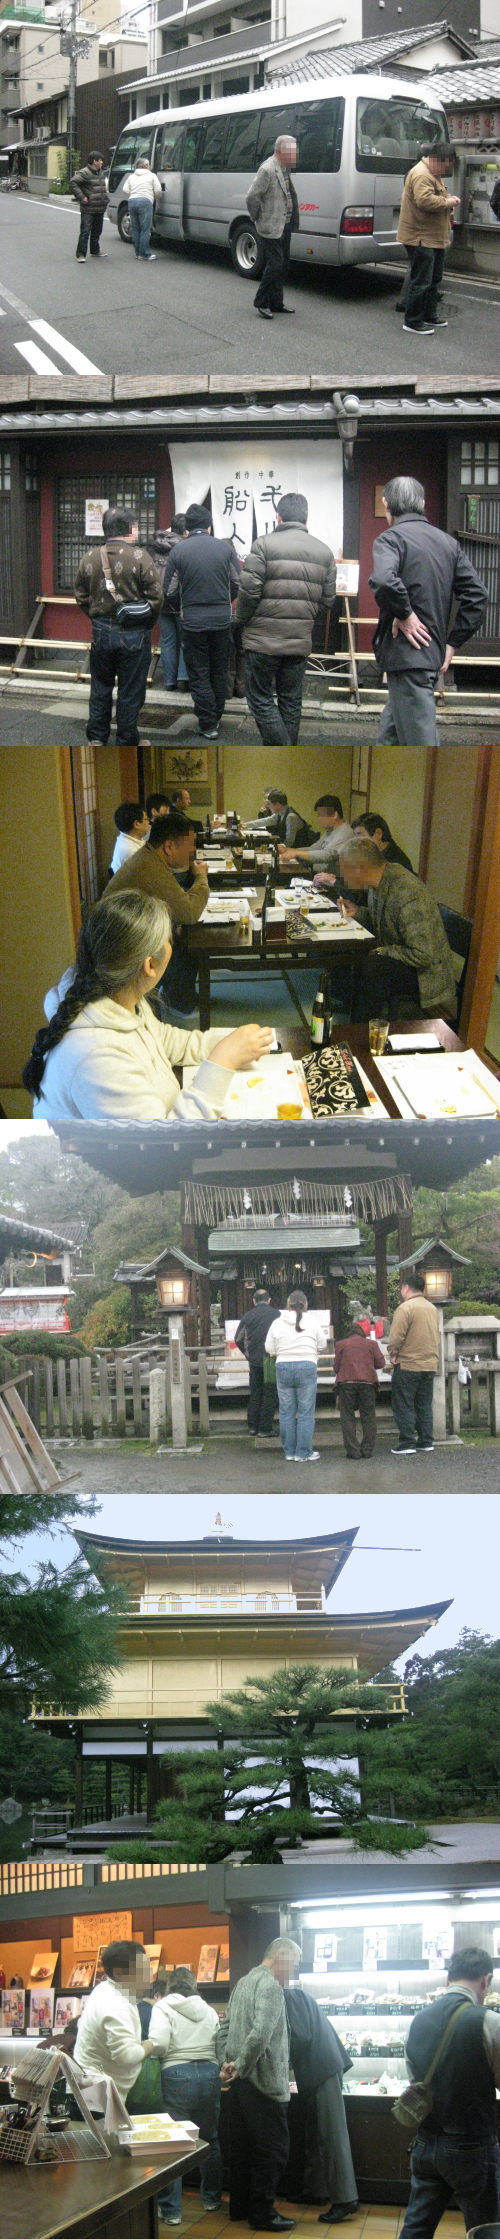 交流会京都観光と食事会